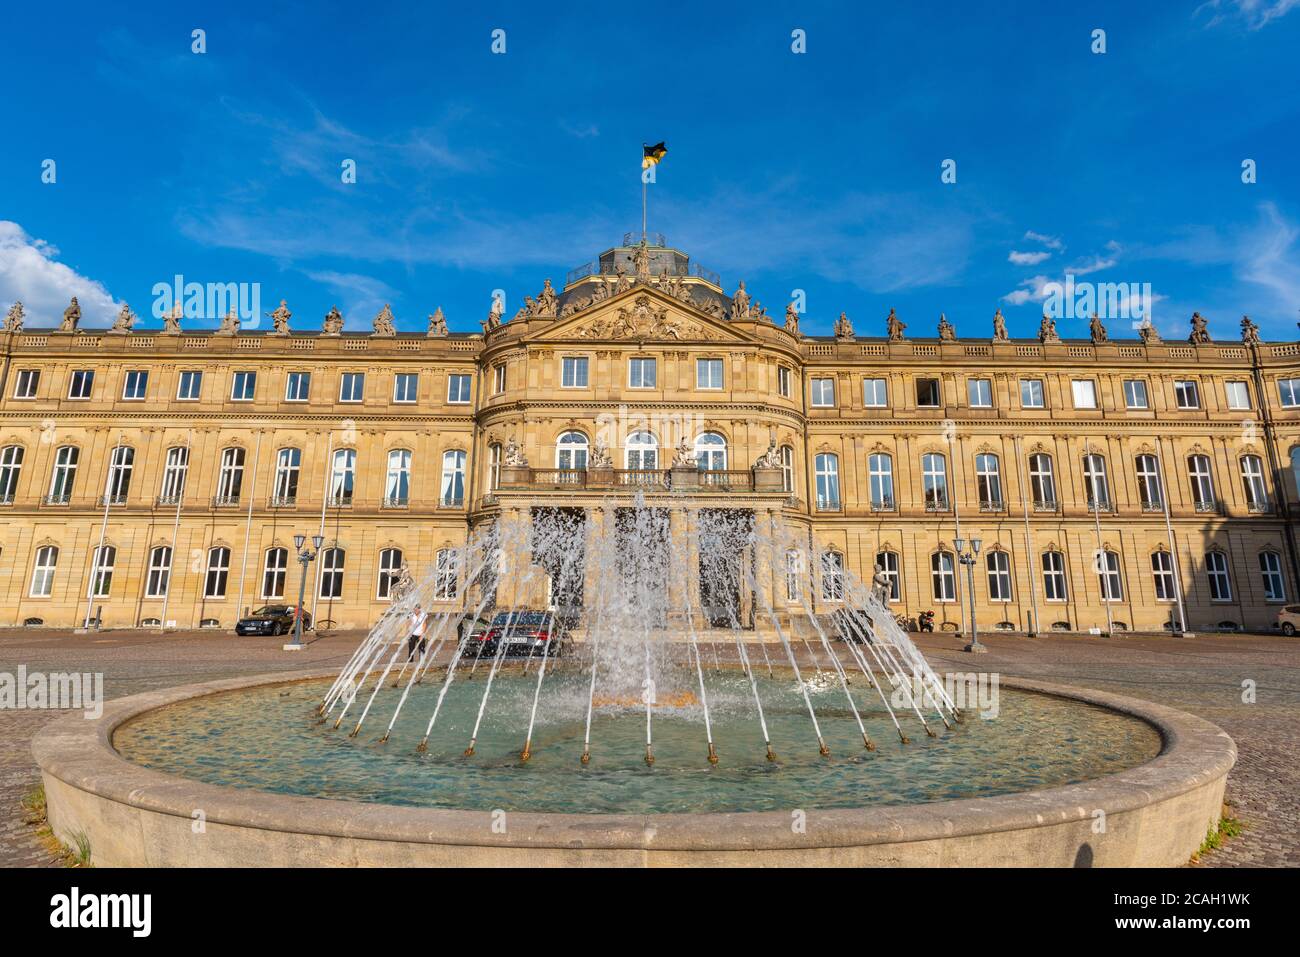 Neues Schloss ou Nouveau Palais à Schlossplatz ou place du Château dans le centre-ville, Stuttgart, Etat fédéral du Bade-Wurtemberg, Allemagne du Sud, Europe Banque D'Images